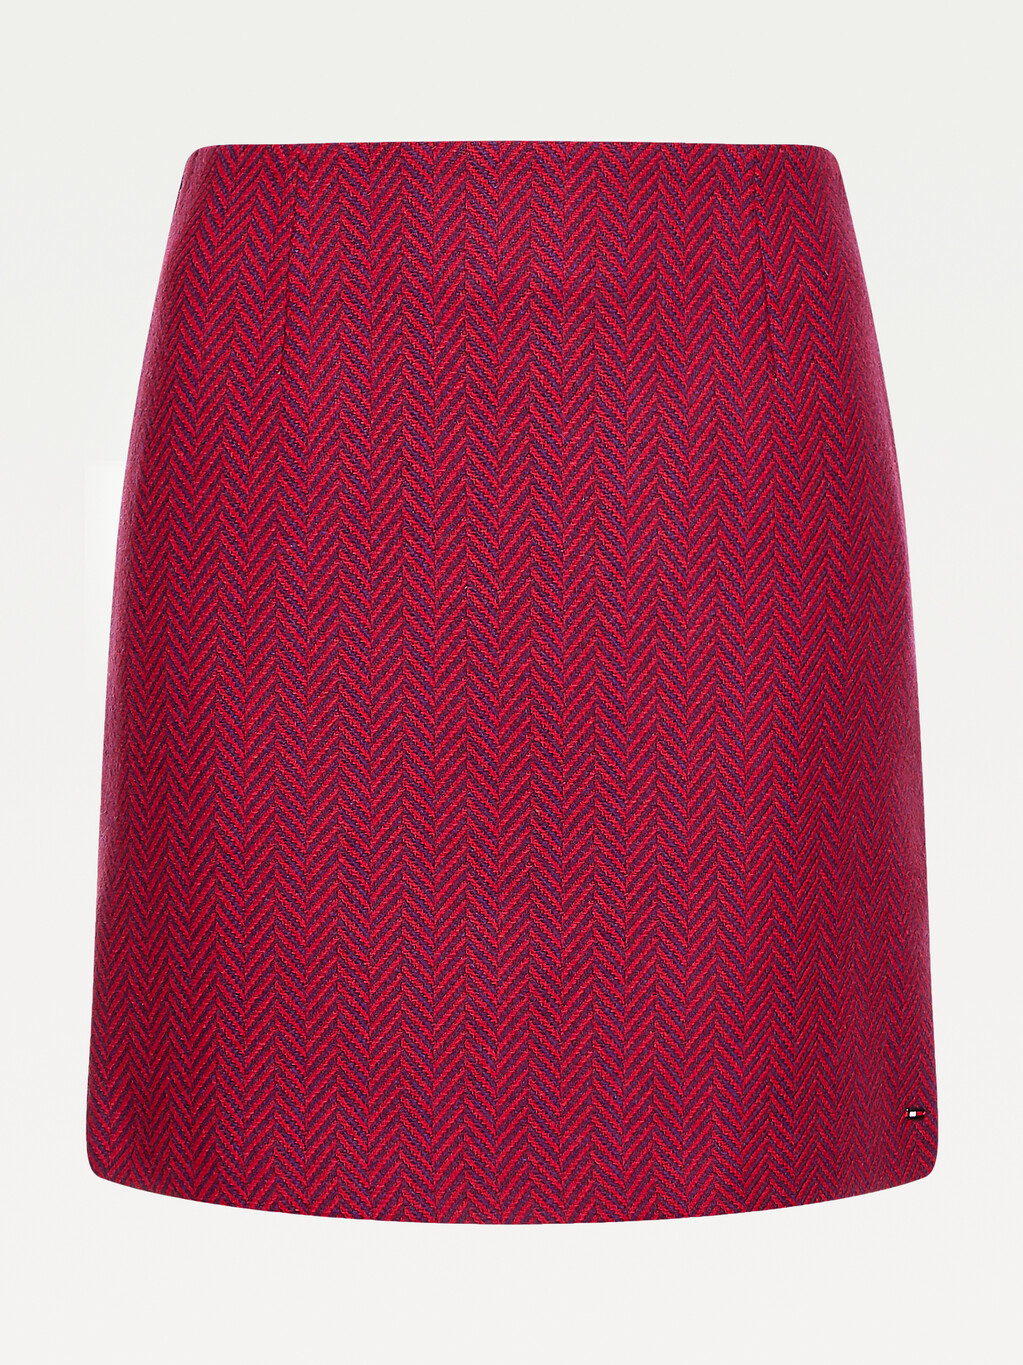 Recyled Wool Herringbone Mini Skirt